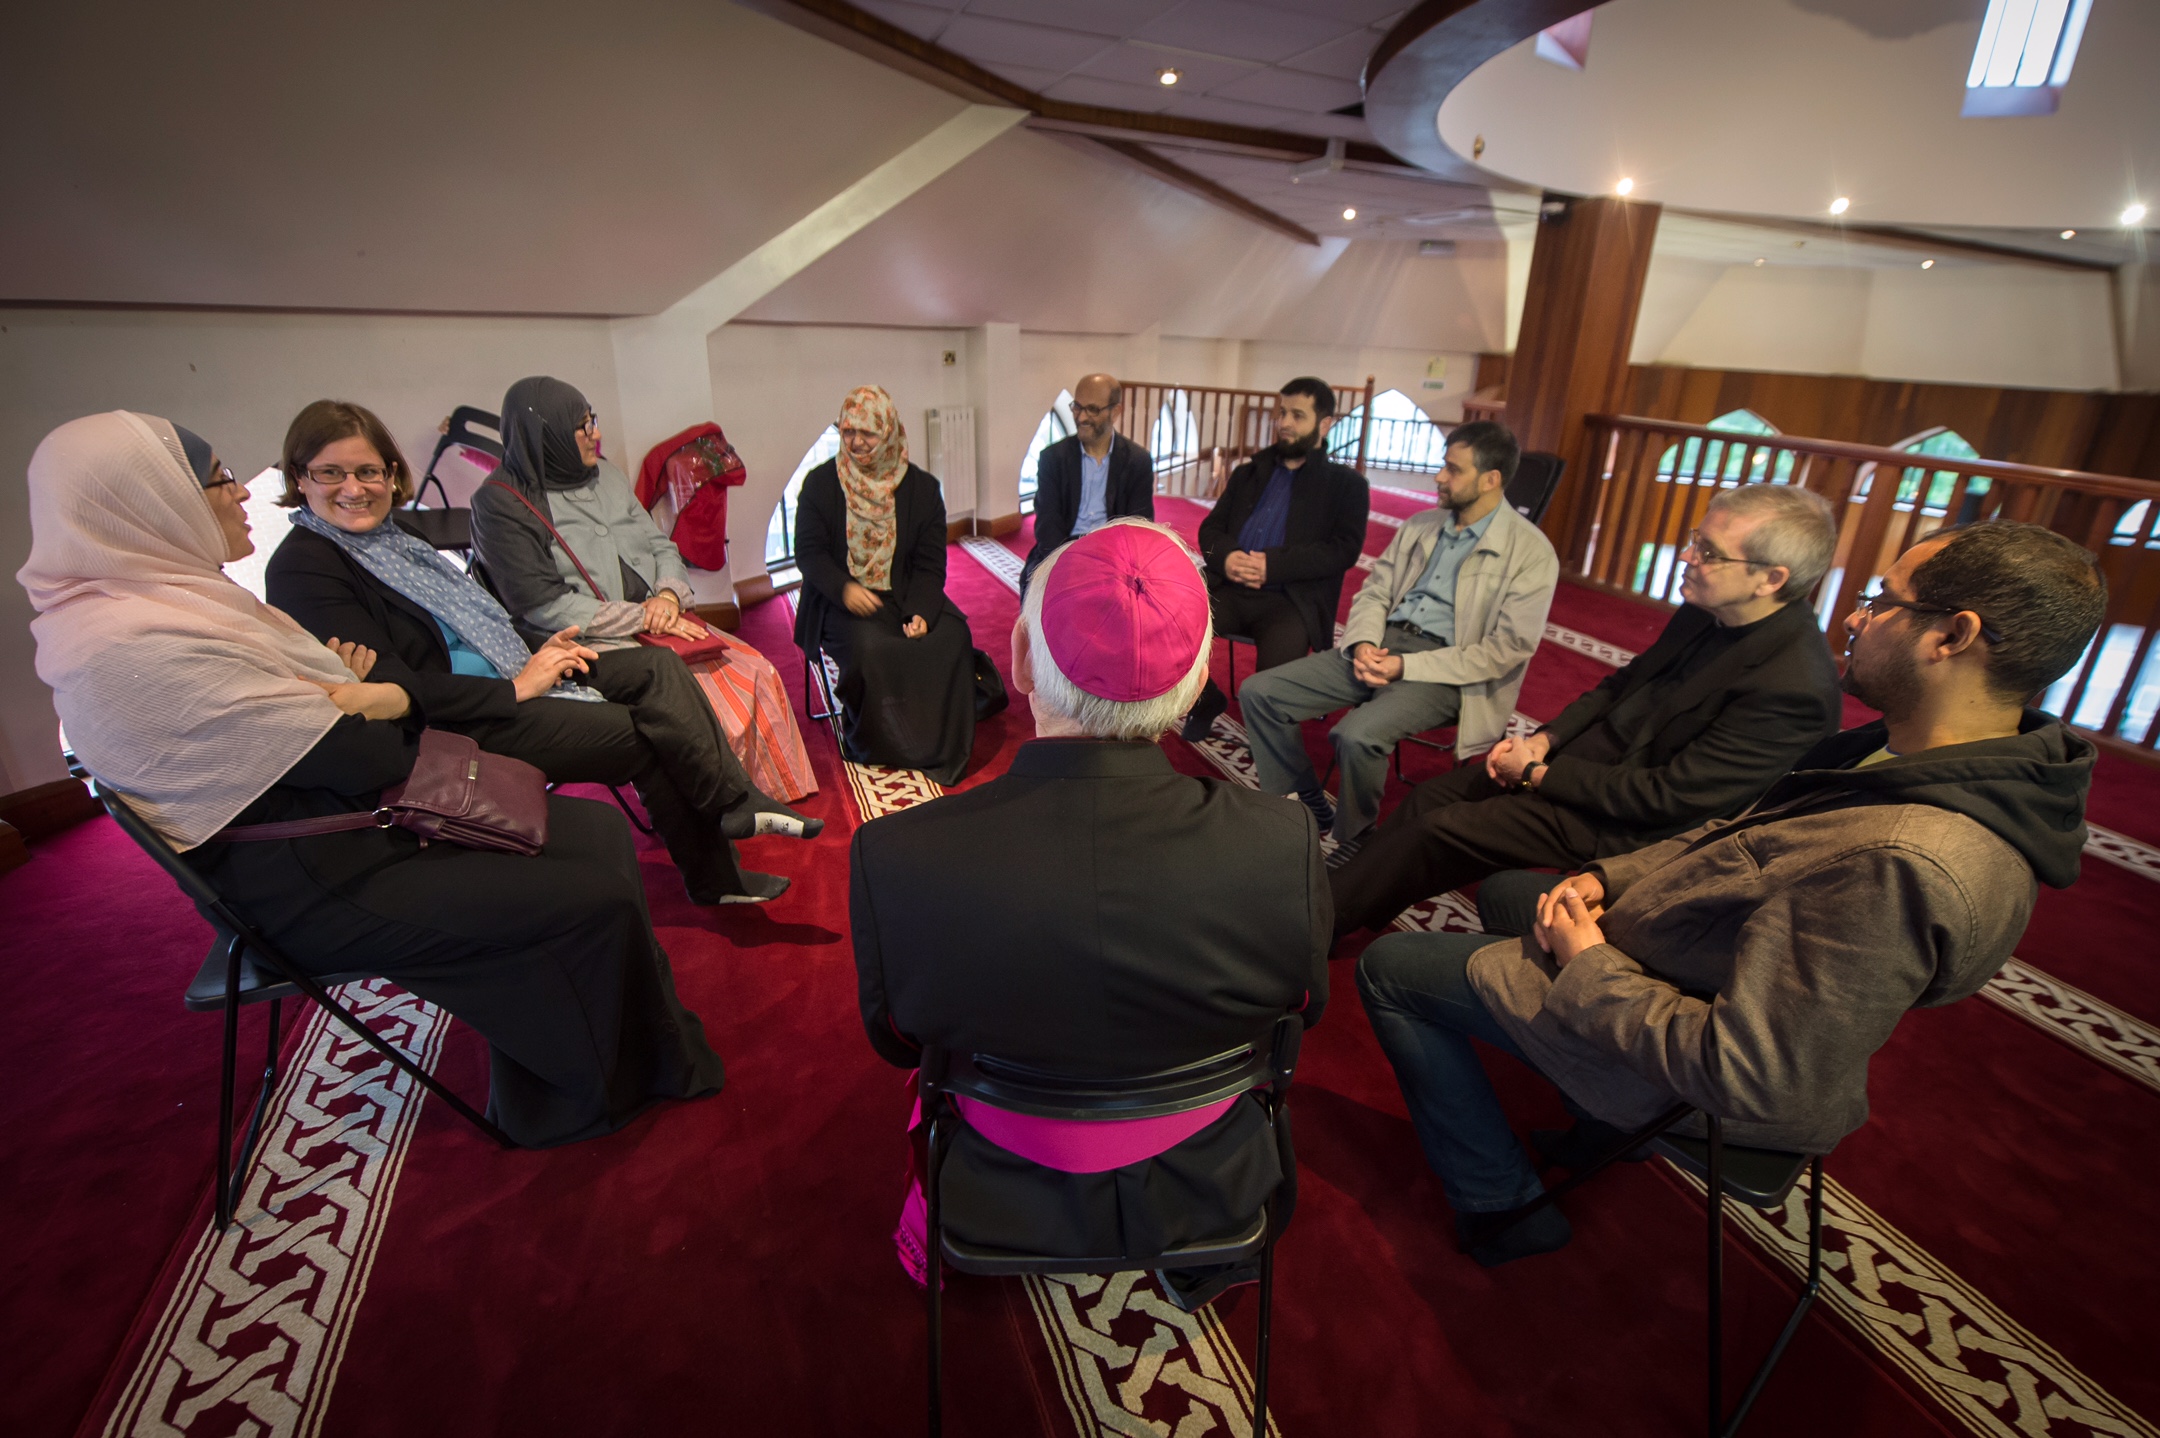 Católicos visitan proyecto para personas sin hogar en mezquita de Londres